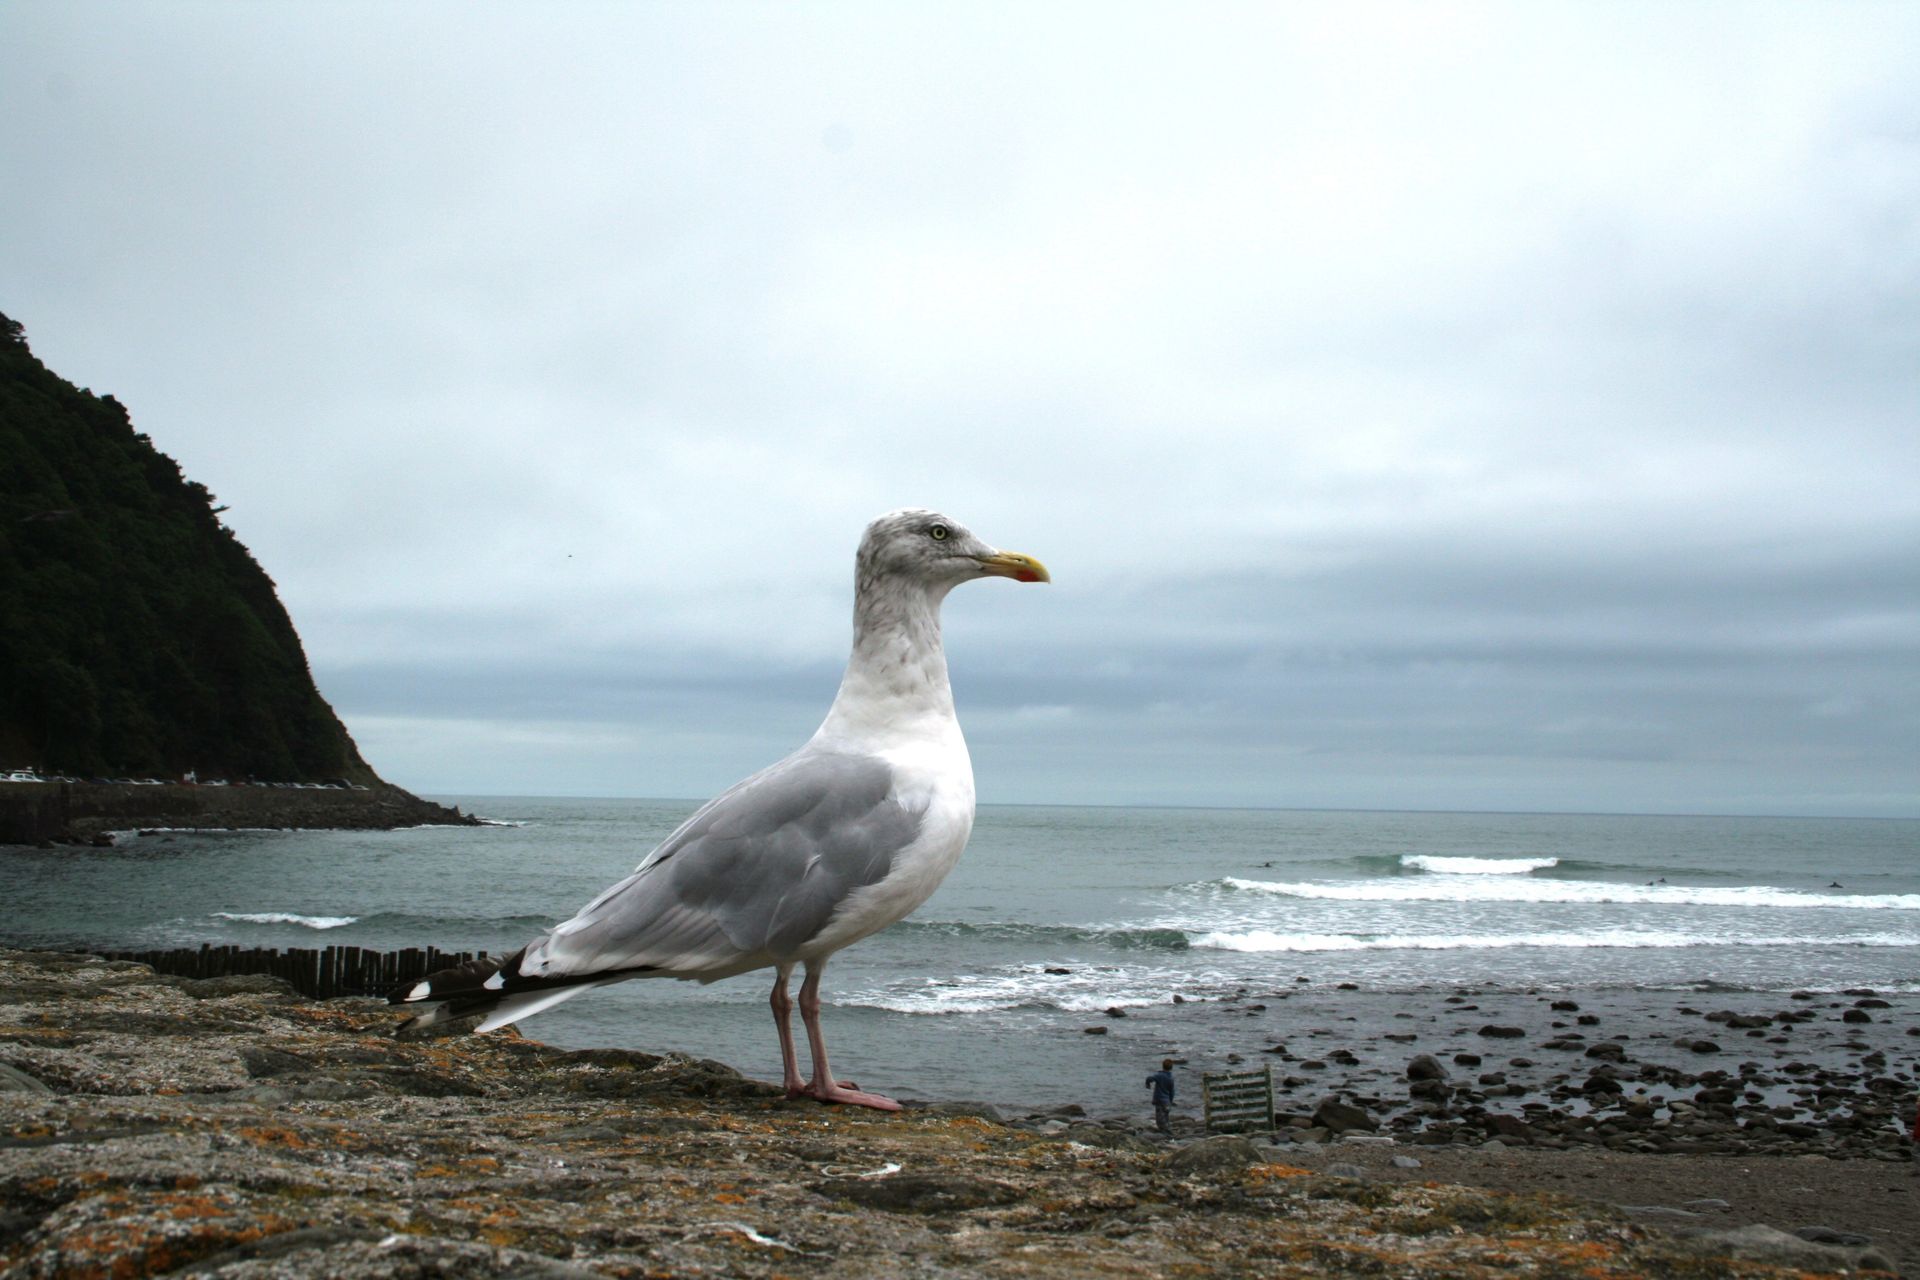 An image of a seagull near a beach.